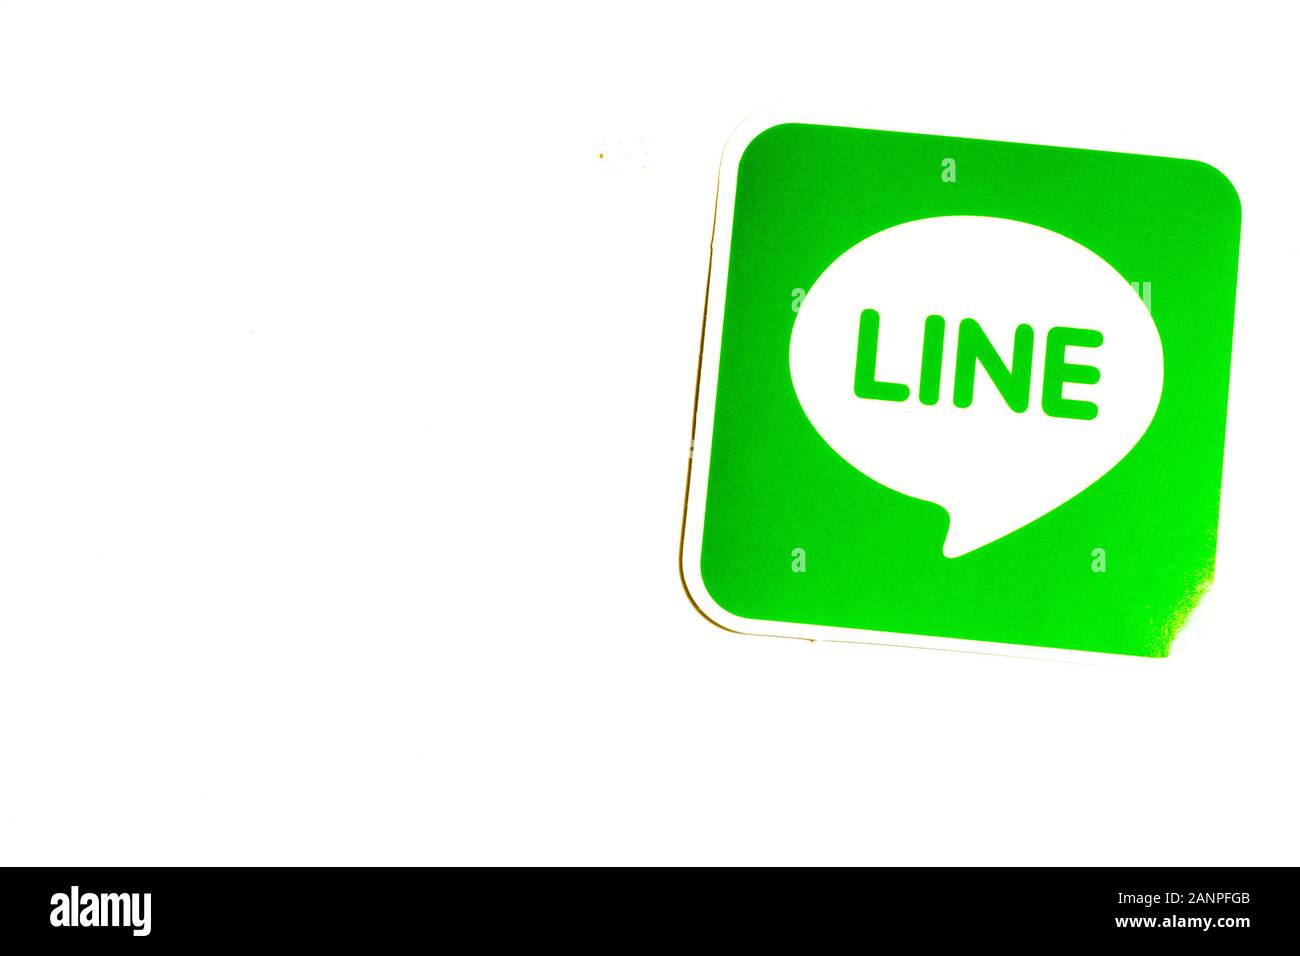 Los Angeles, Californie, États-Unis - 17 janvier 2020: Logo de ligne APP sur fond blanc avec espace de copie. Icône des médias sociaux, éditorial illustratif Banque D'Images